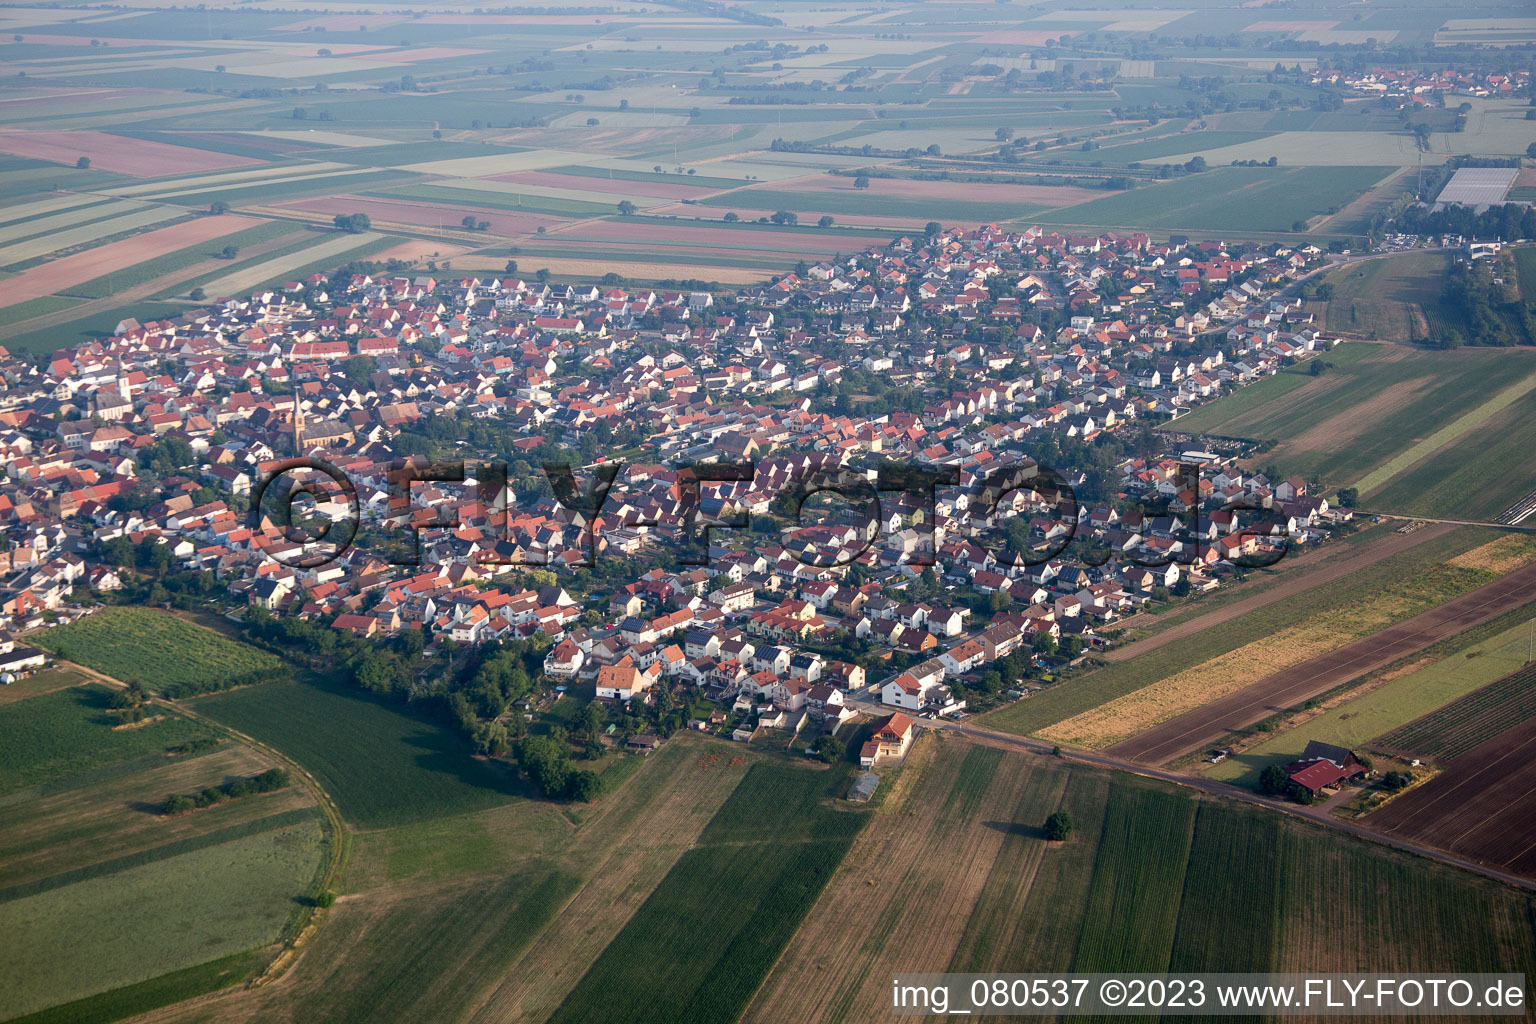 Luftbild von Ortsteil Mechtersheim in Römerberg im Bundesland Rheinland-Pfalz, Deutschland